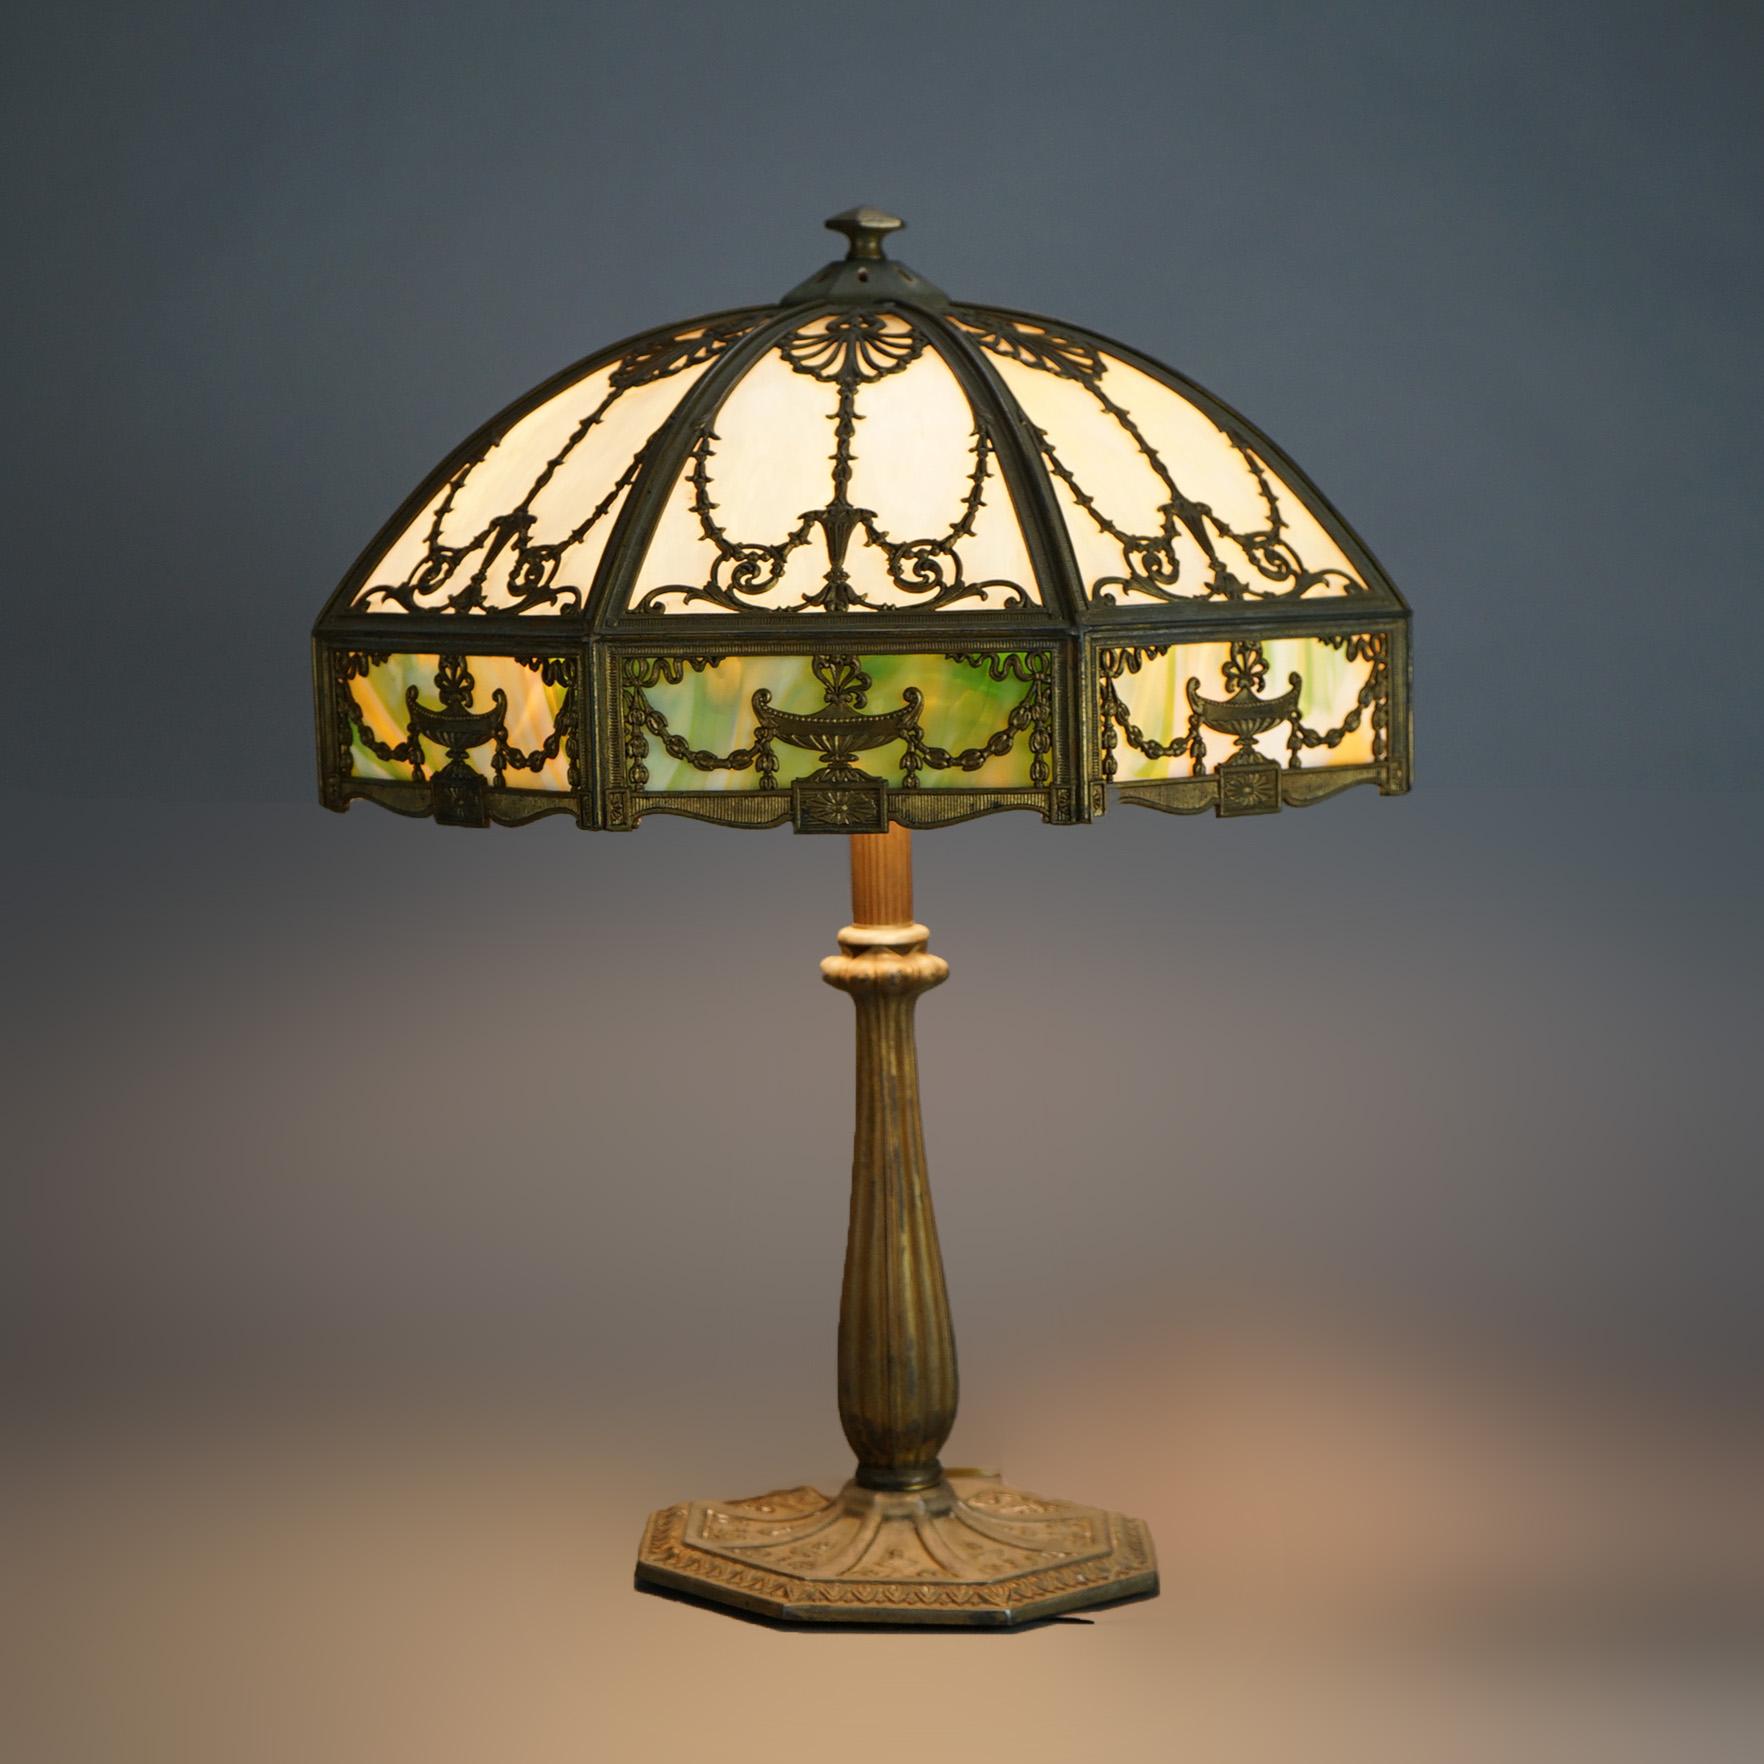 Lampe de table antique Arts & Crafts par Bradley & Hubbard offrant un abat-jour en forme de dôme avec un cadre moulé ayant un design néoclassique d'urne et de feuillage, abritant un verre de scories à deux tons au-dessus d'une base à trois douilles,